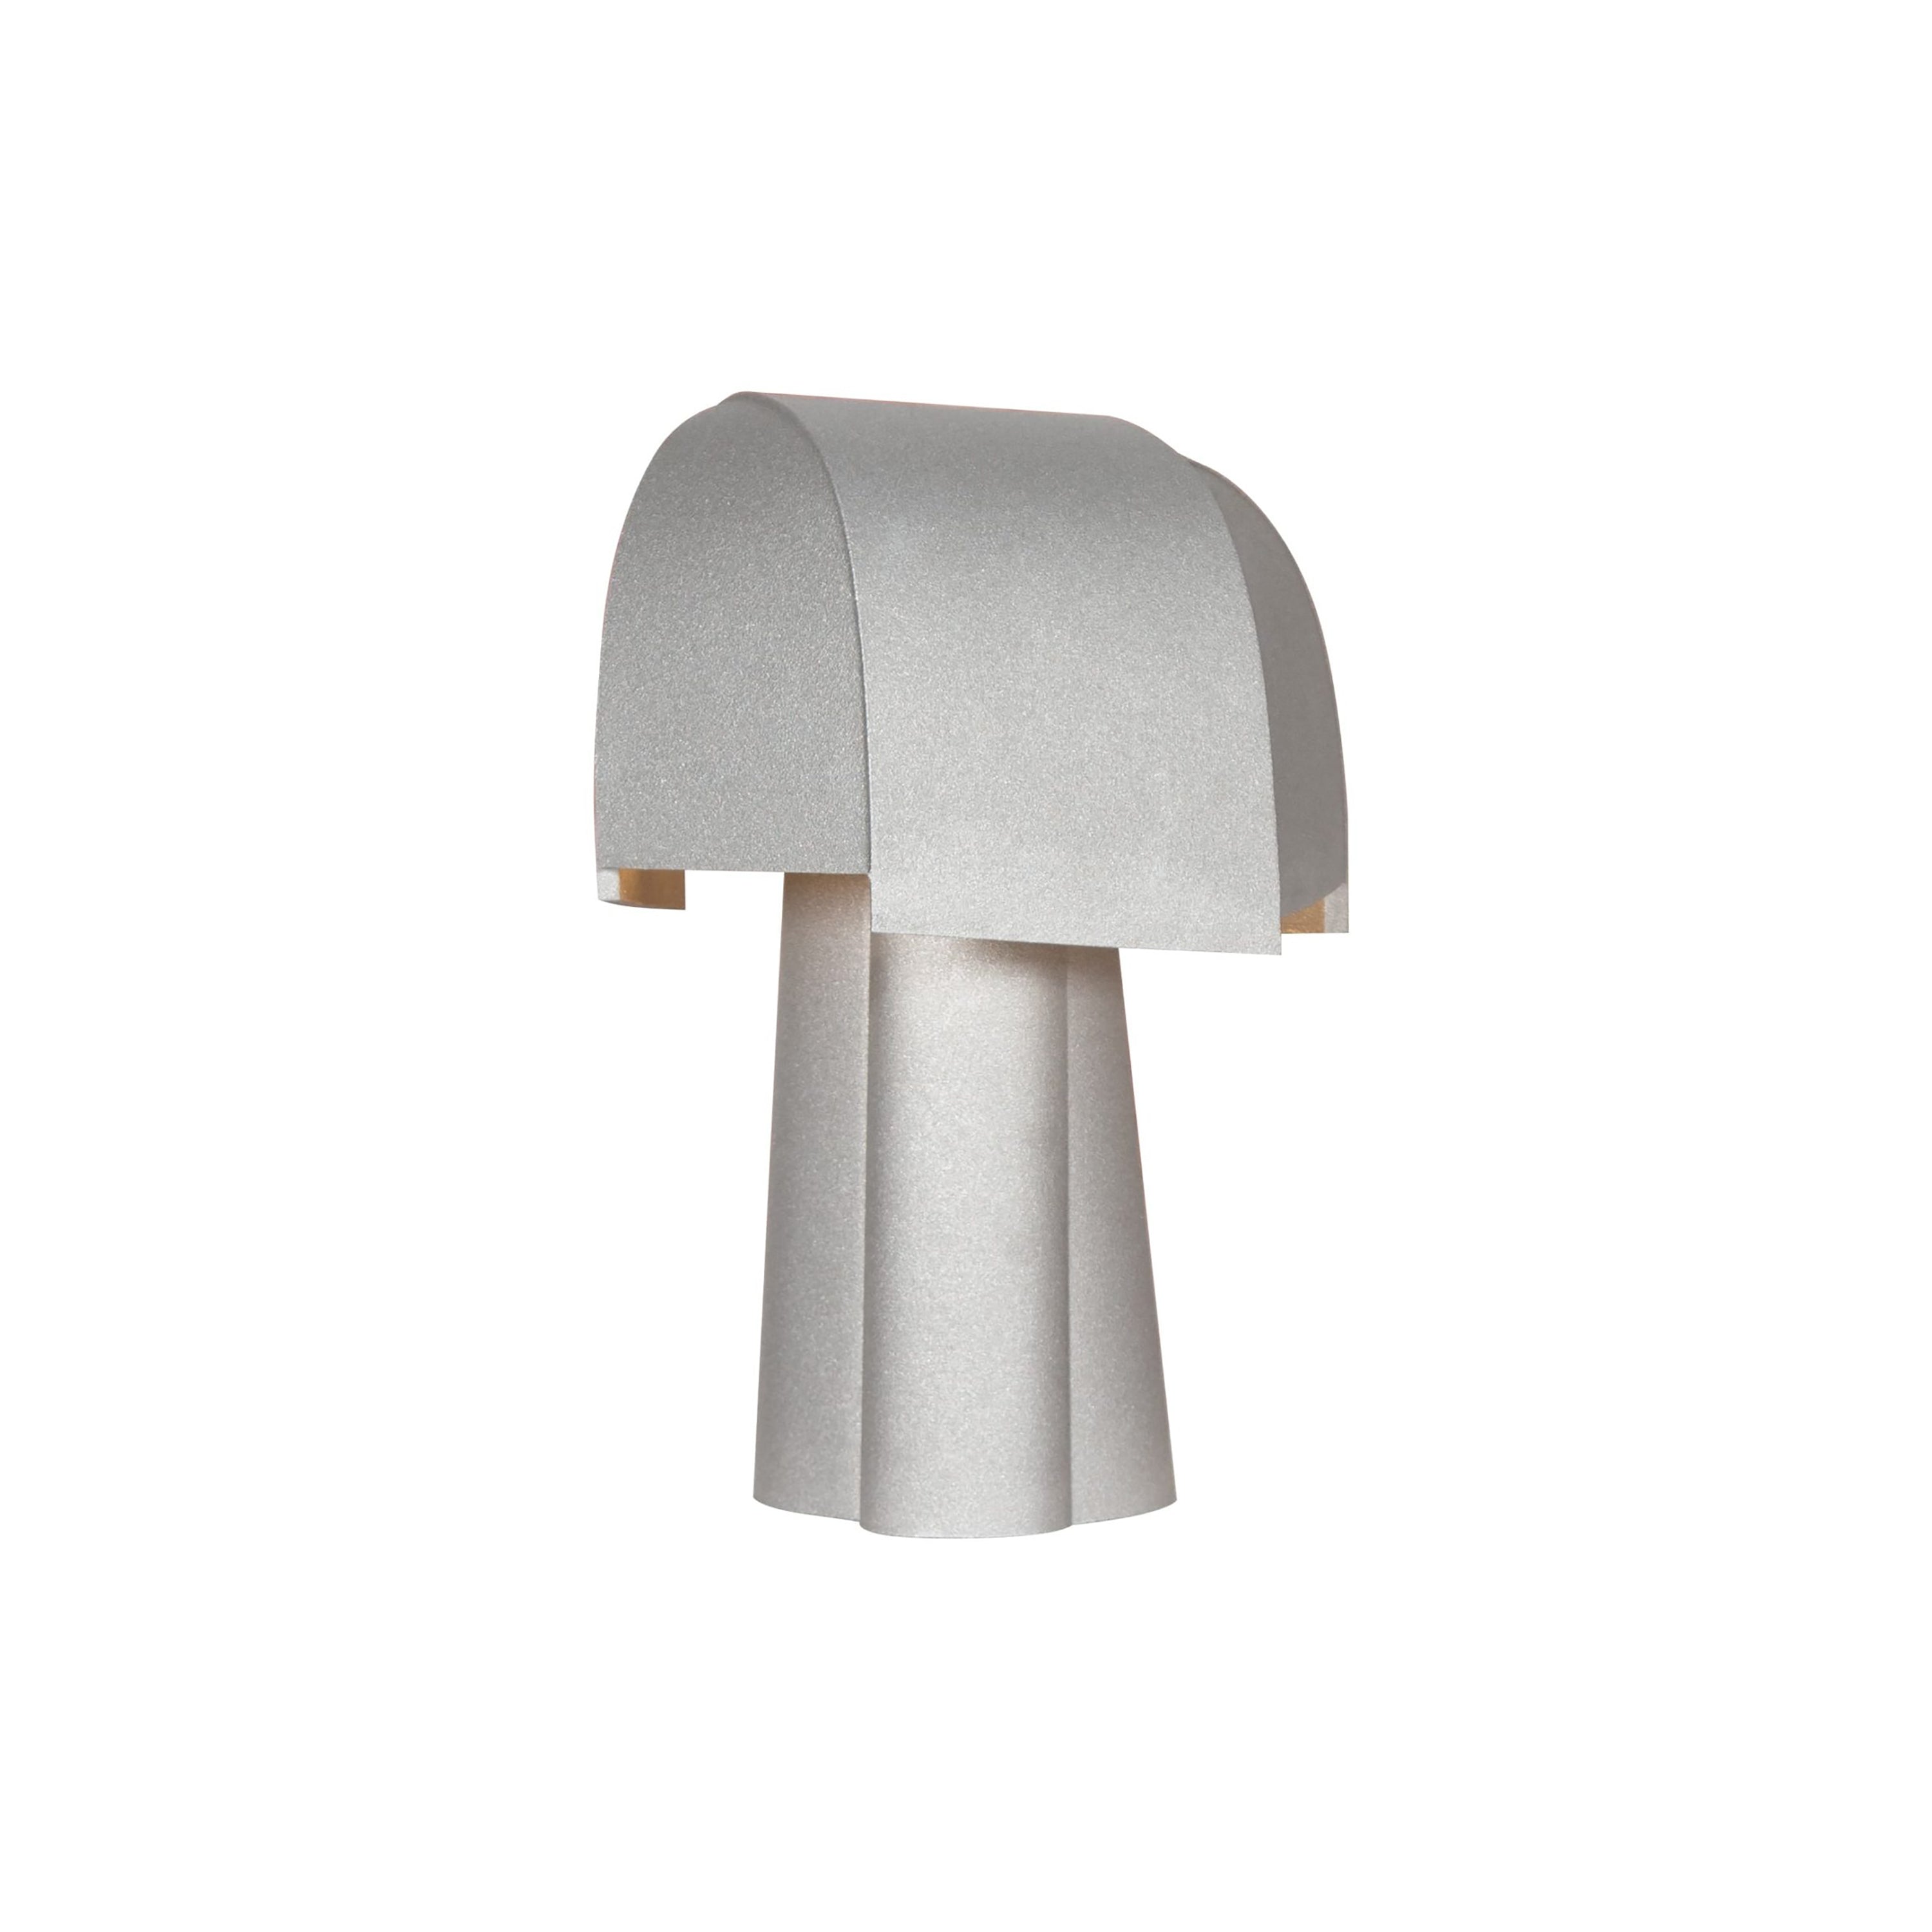 Samsa Table Lamp: Aluminum Blast